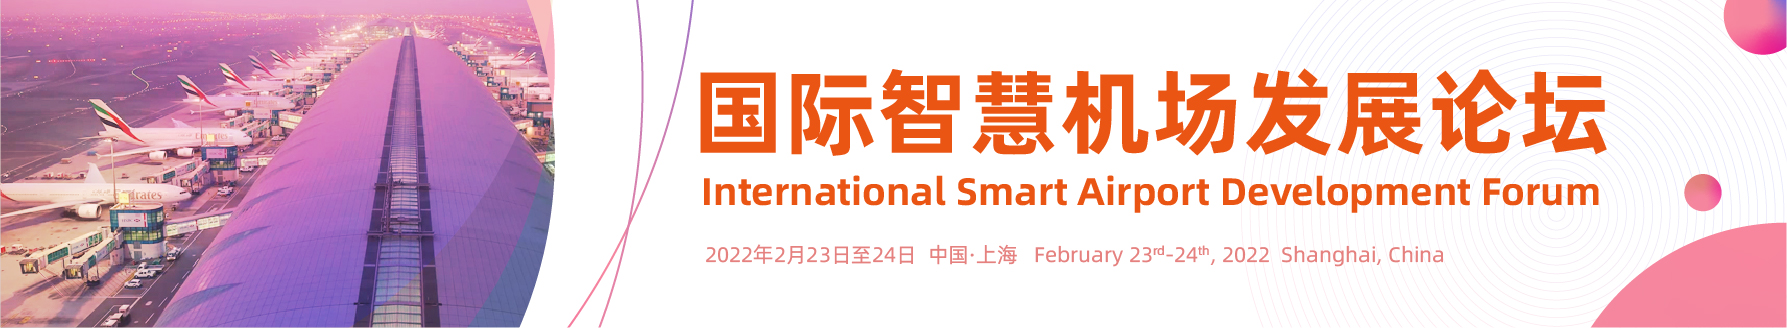 International Smart Airport Development Forum